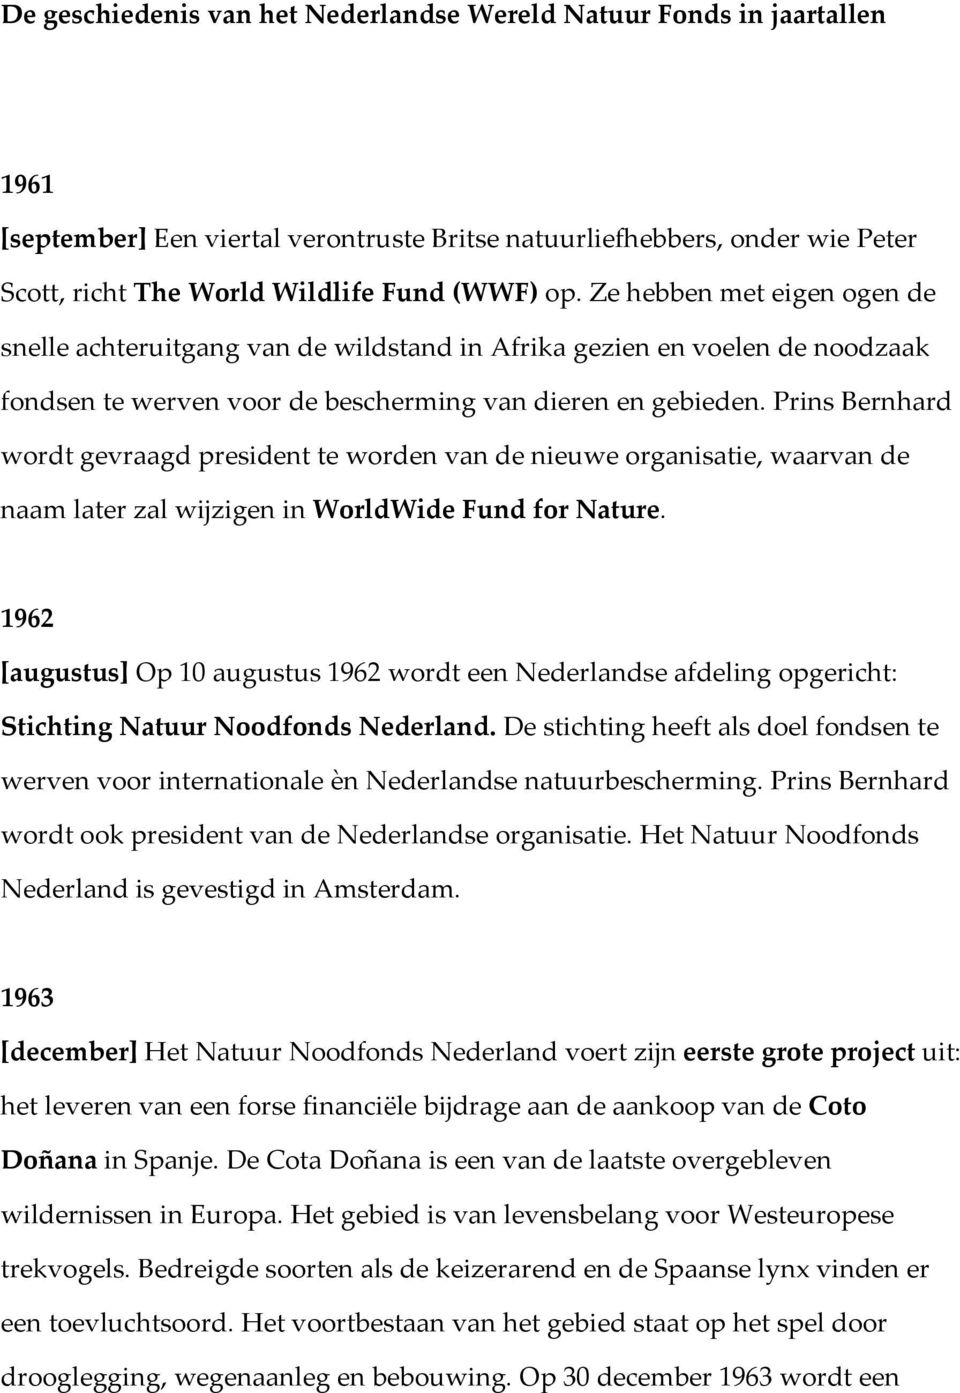 Prins Bernhard wordt gevraagd president te worden van de nieuwe organisatie, waarvan de naam later zal wijzigen in WorldWide Fund for Nature.